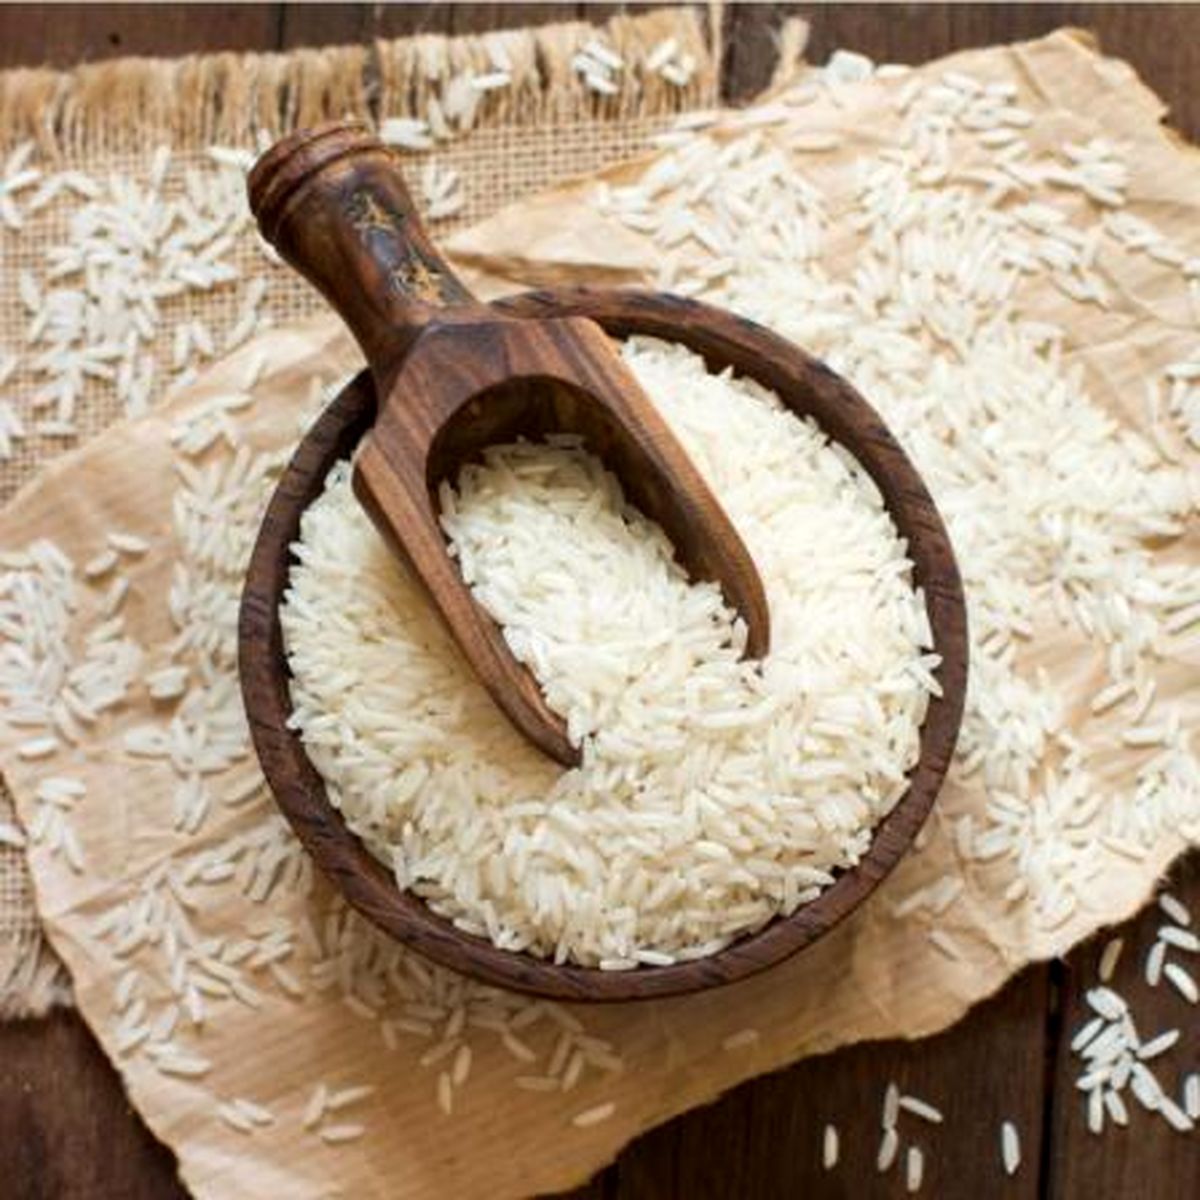 کاهش ۱۰ هزار تومانی قیمت هر کیلو برنج ایرانی/ قیمت برنج شمال بین ۷۰ تا ۱۱۰ هزار تومان است